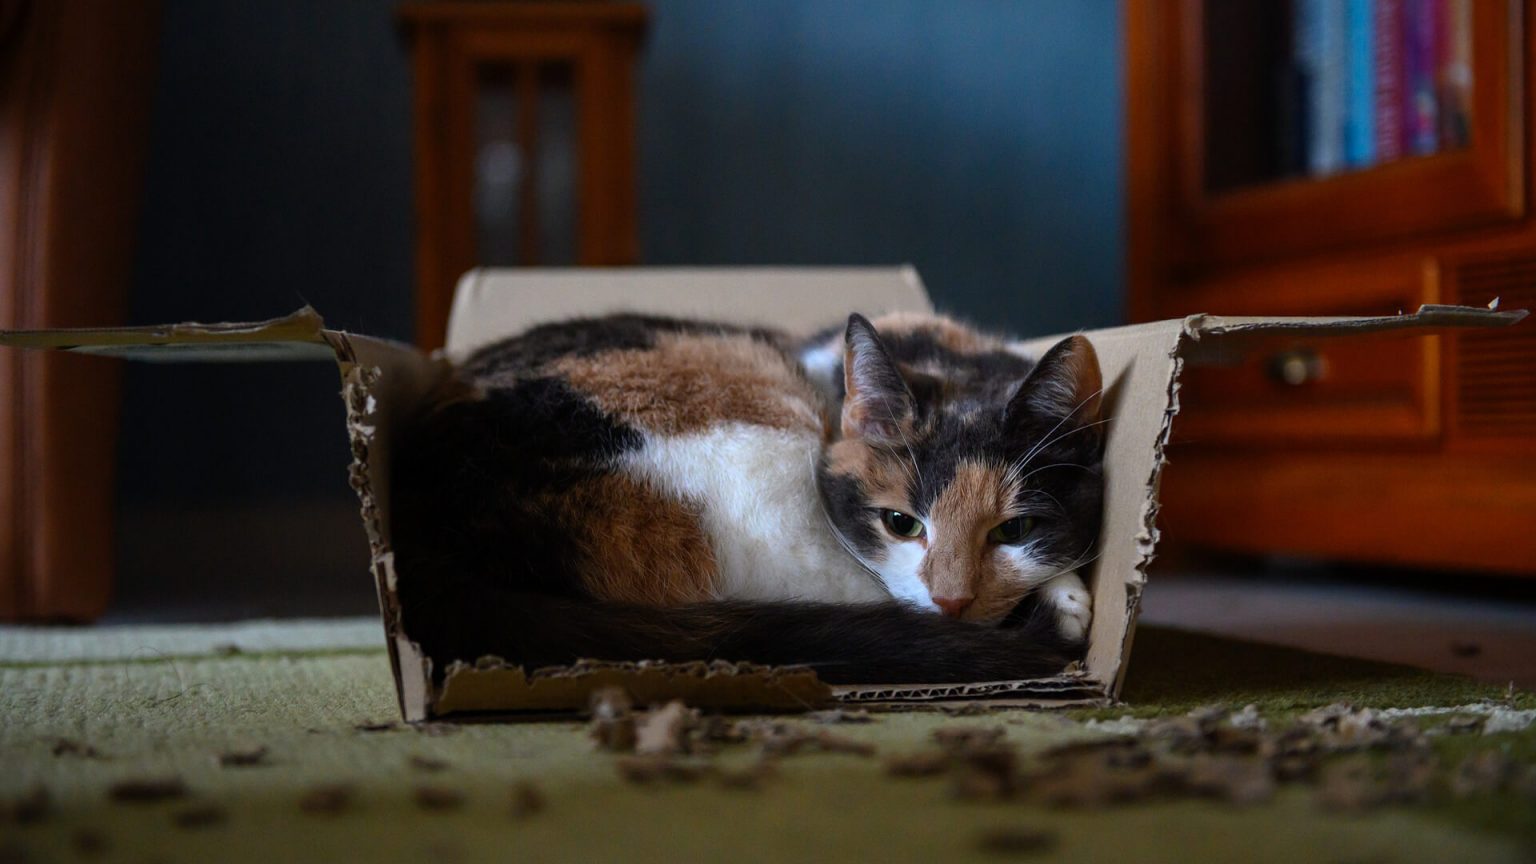 Kediler Neden Karton Kutuları Sever? ️ Miyavliyo